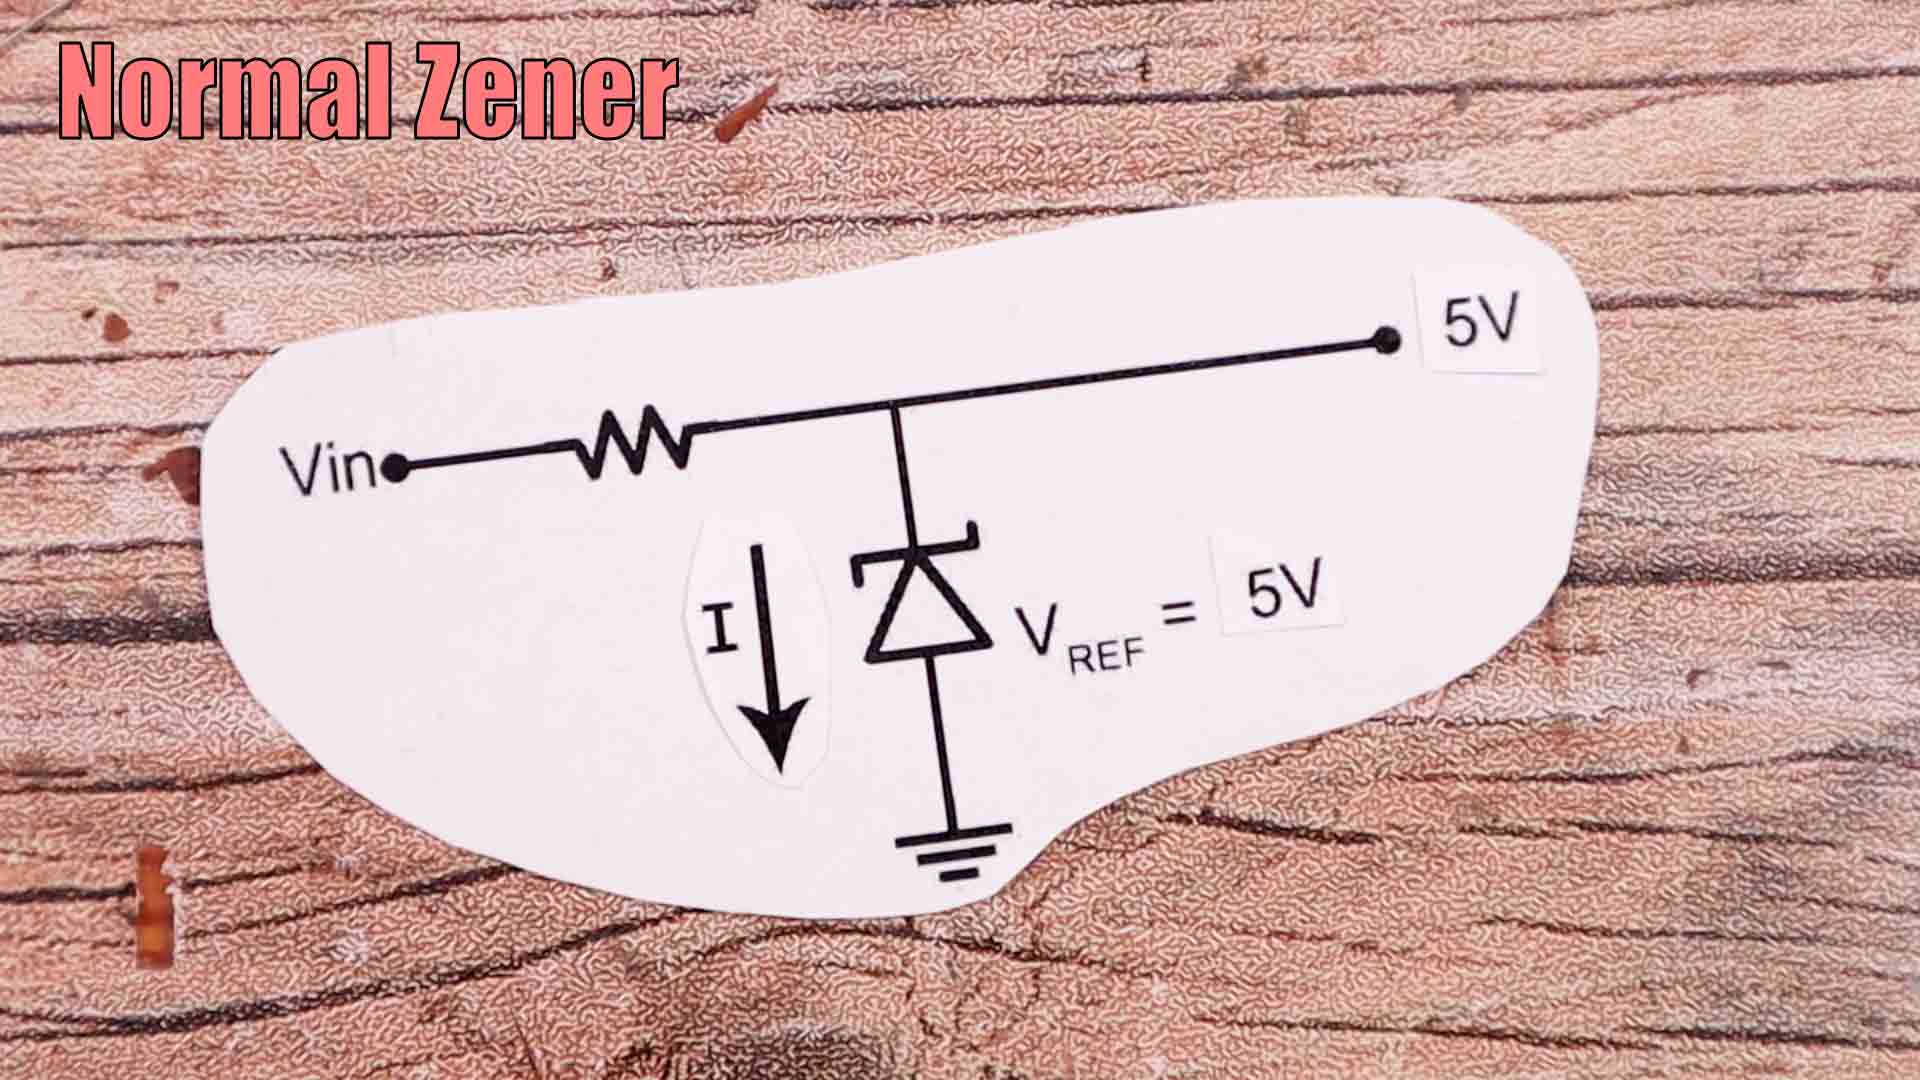 zener diode voltage regulation circuit